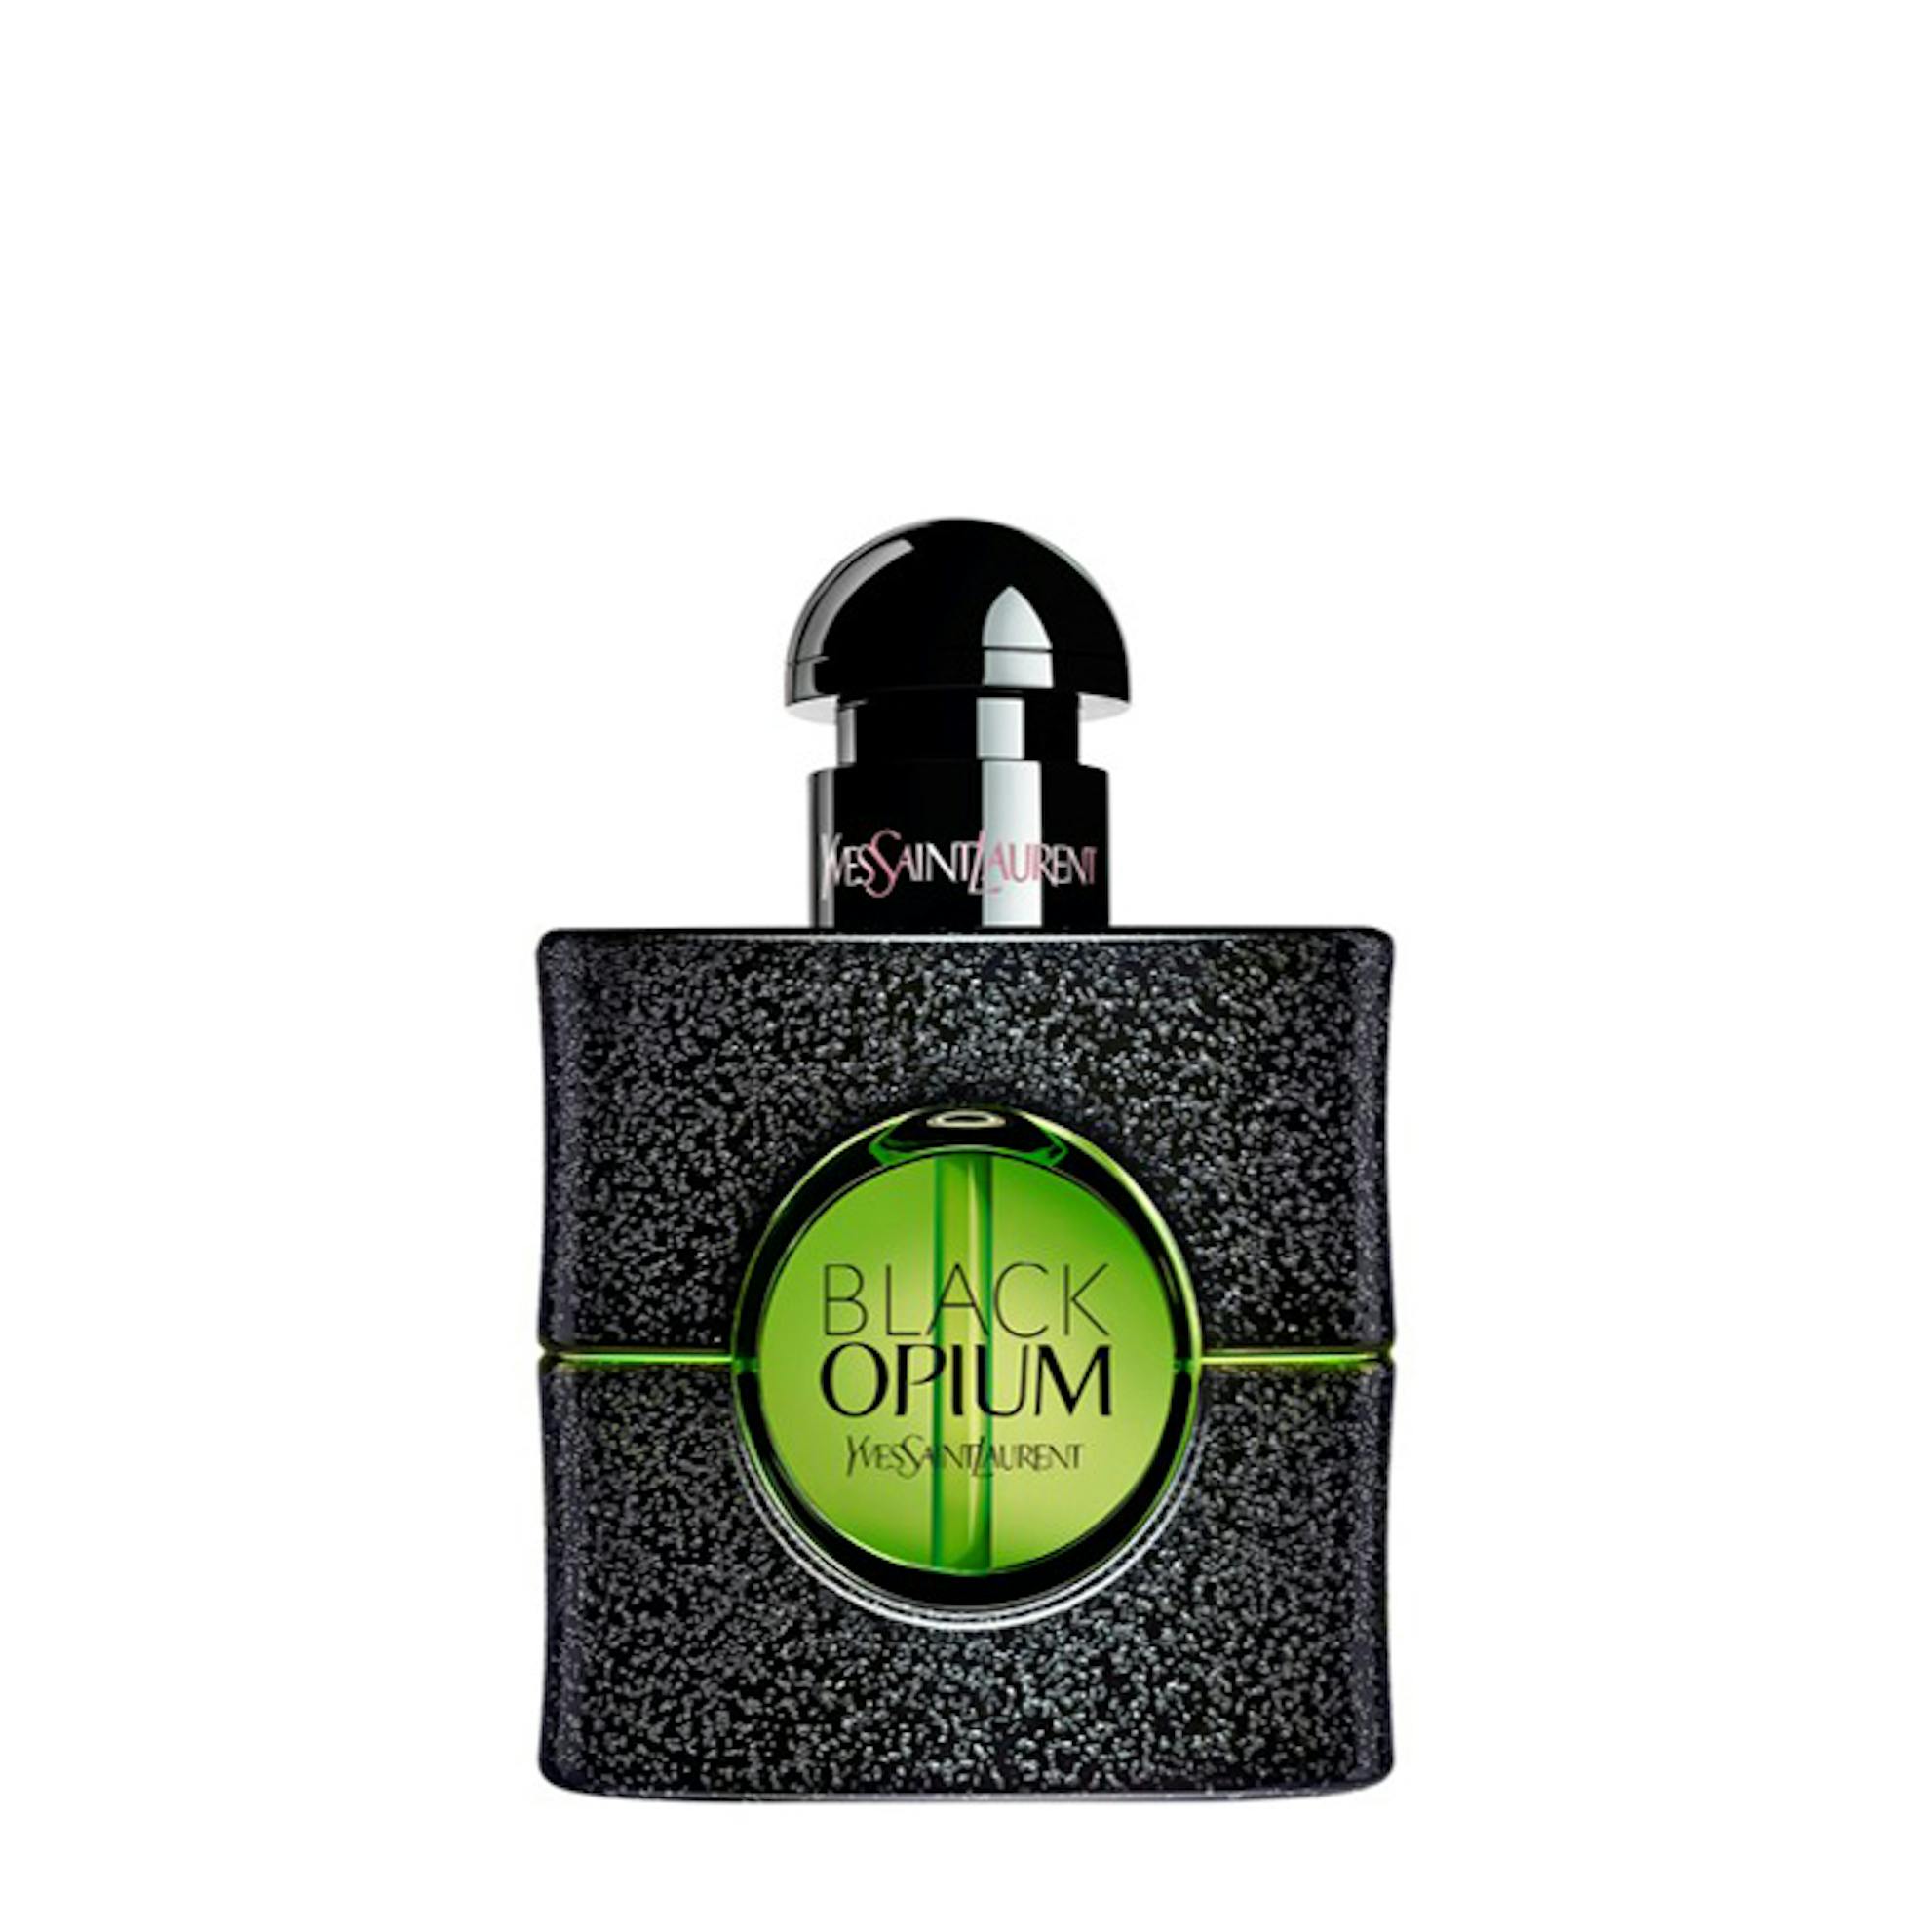 Yves Saint Laurent Opium Black Eau De Parfum 30ml Spray